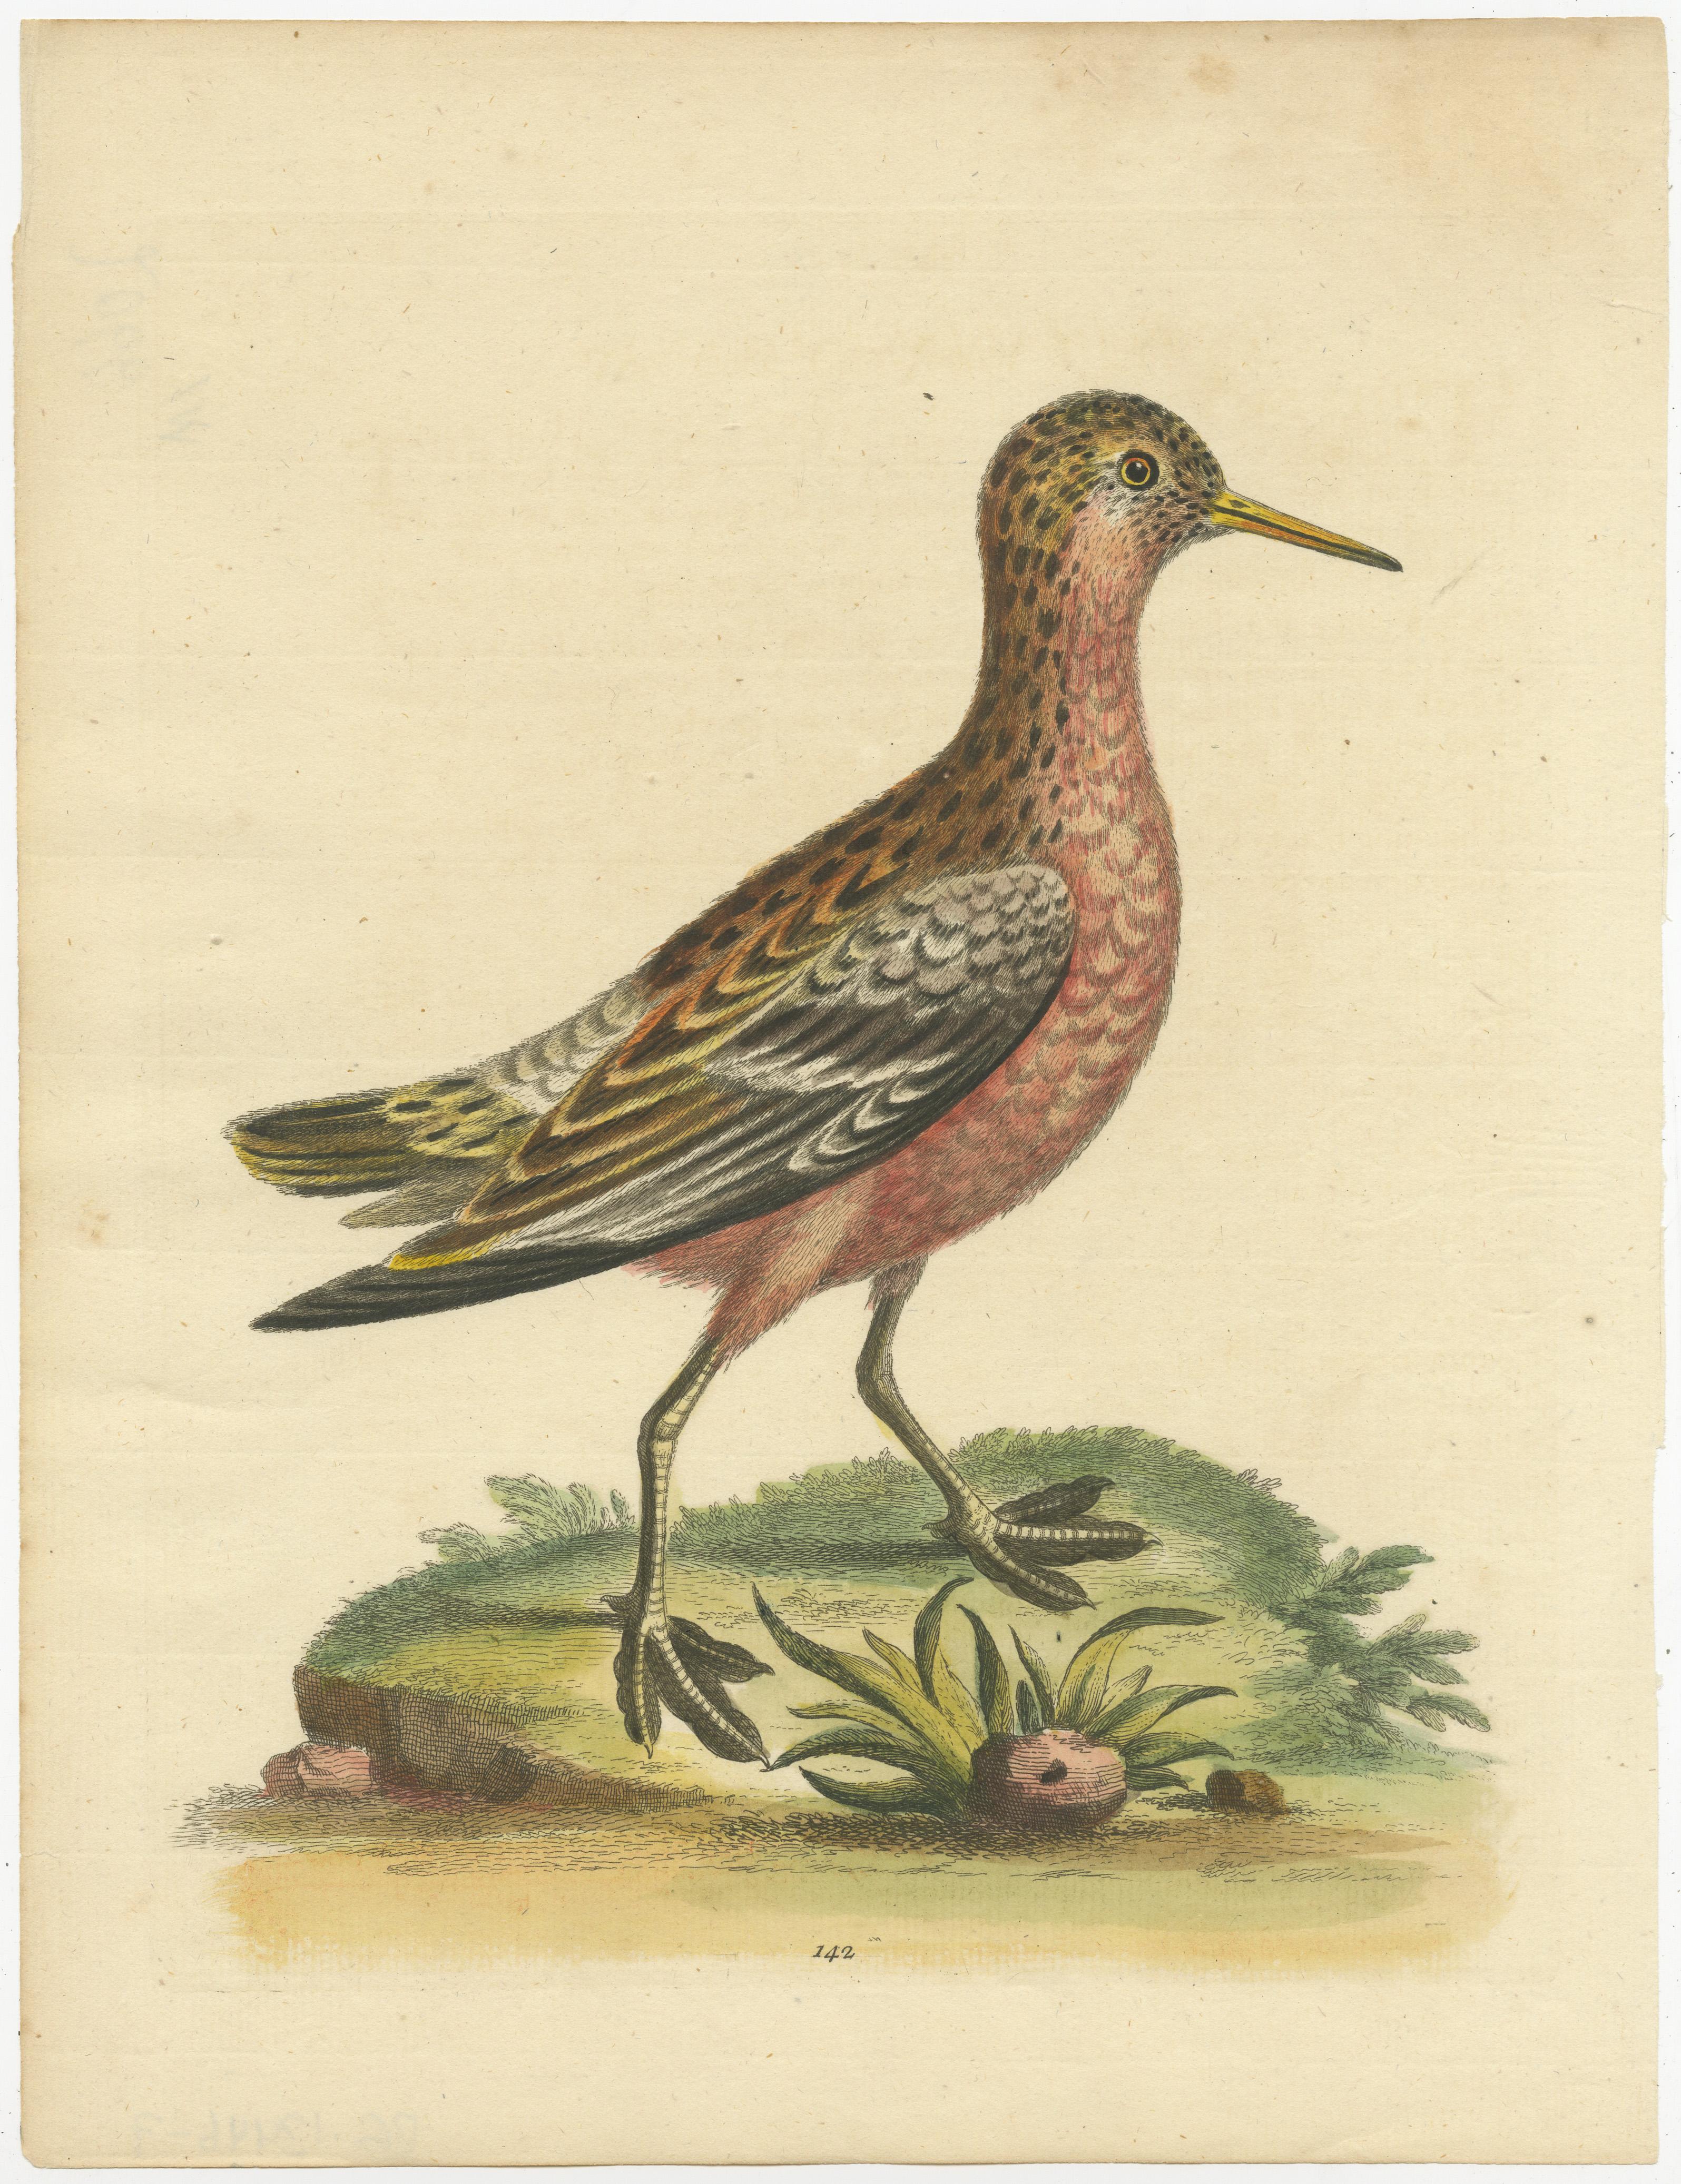 Gravure ancienne originale d'un bécasseau. Cette estampe est tirée de 'Natural History of Uncommon Birds' de George Edwards. Publié en 1743-51. 

George Edwards FRS (3 avril 1694 - 23 juillet 1773) était un naturaliste et ornithologue anglais, connu